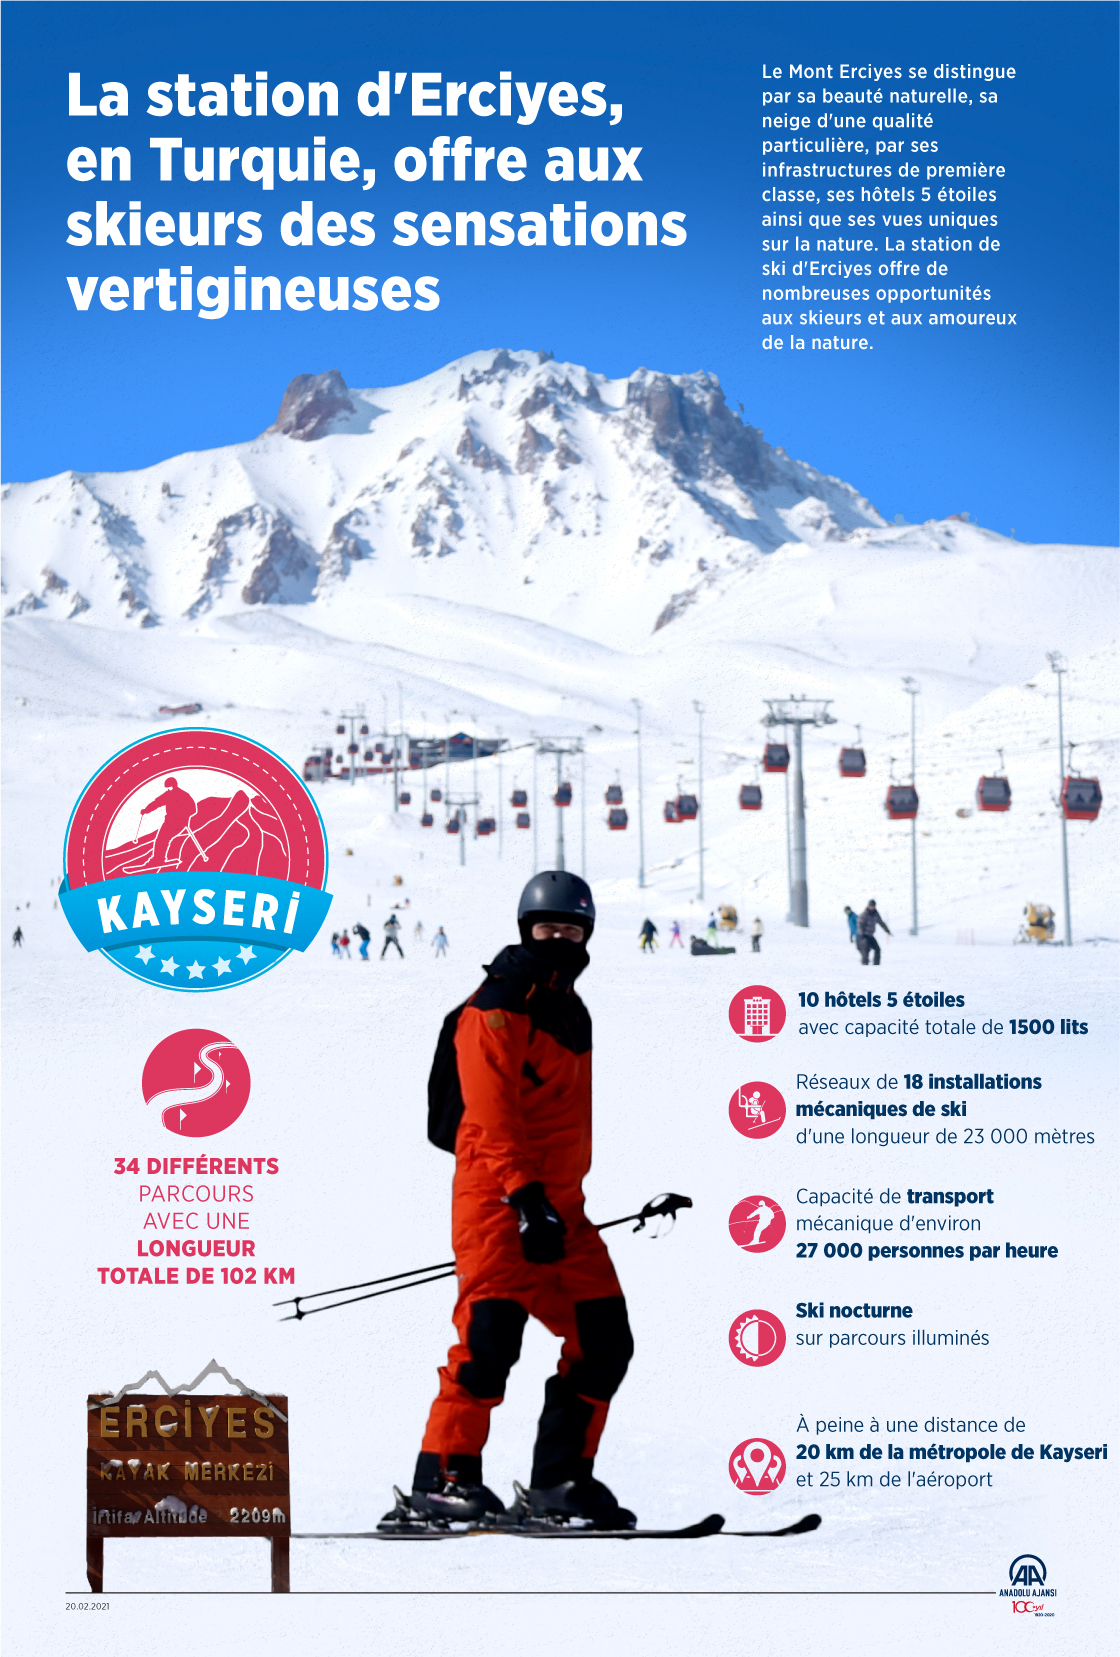 La station d'Erciyes, en Turquie, offre aux skieurs des sensations vertigineuses